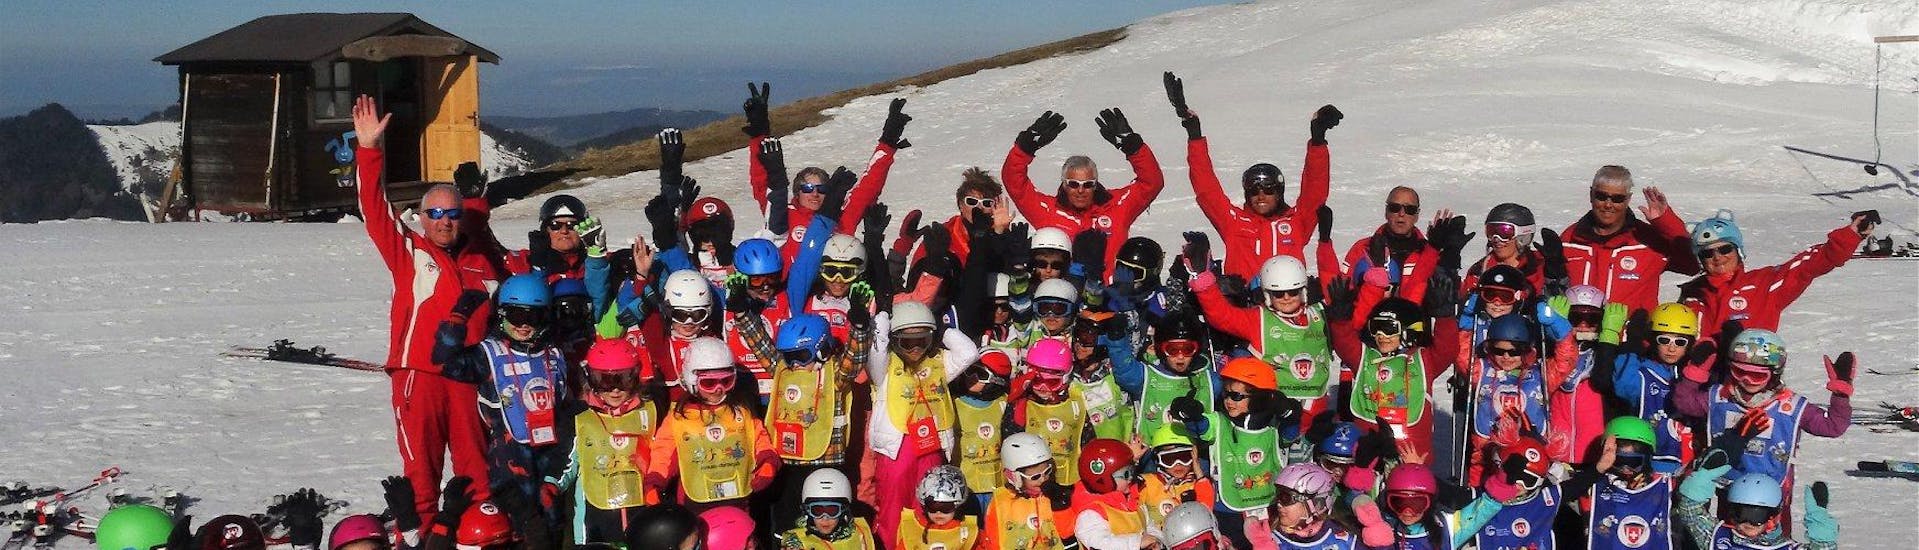 Die Schüler der Schweizer Skischule Charmey und deren Skilehrer posieren gemeinsam beim Kinder Skikurs (6-15 Jahre) - 4 Einheiten - Alle Levels für ein Gruppenfoto.